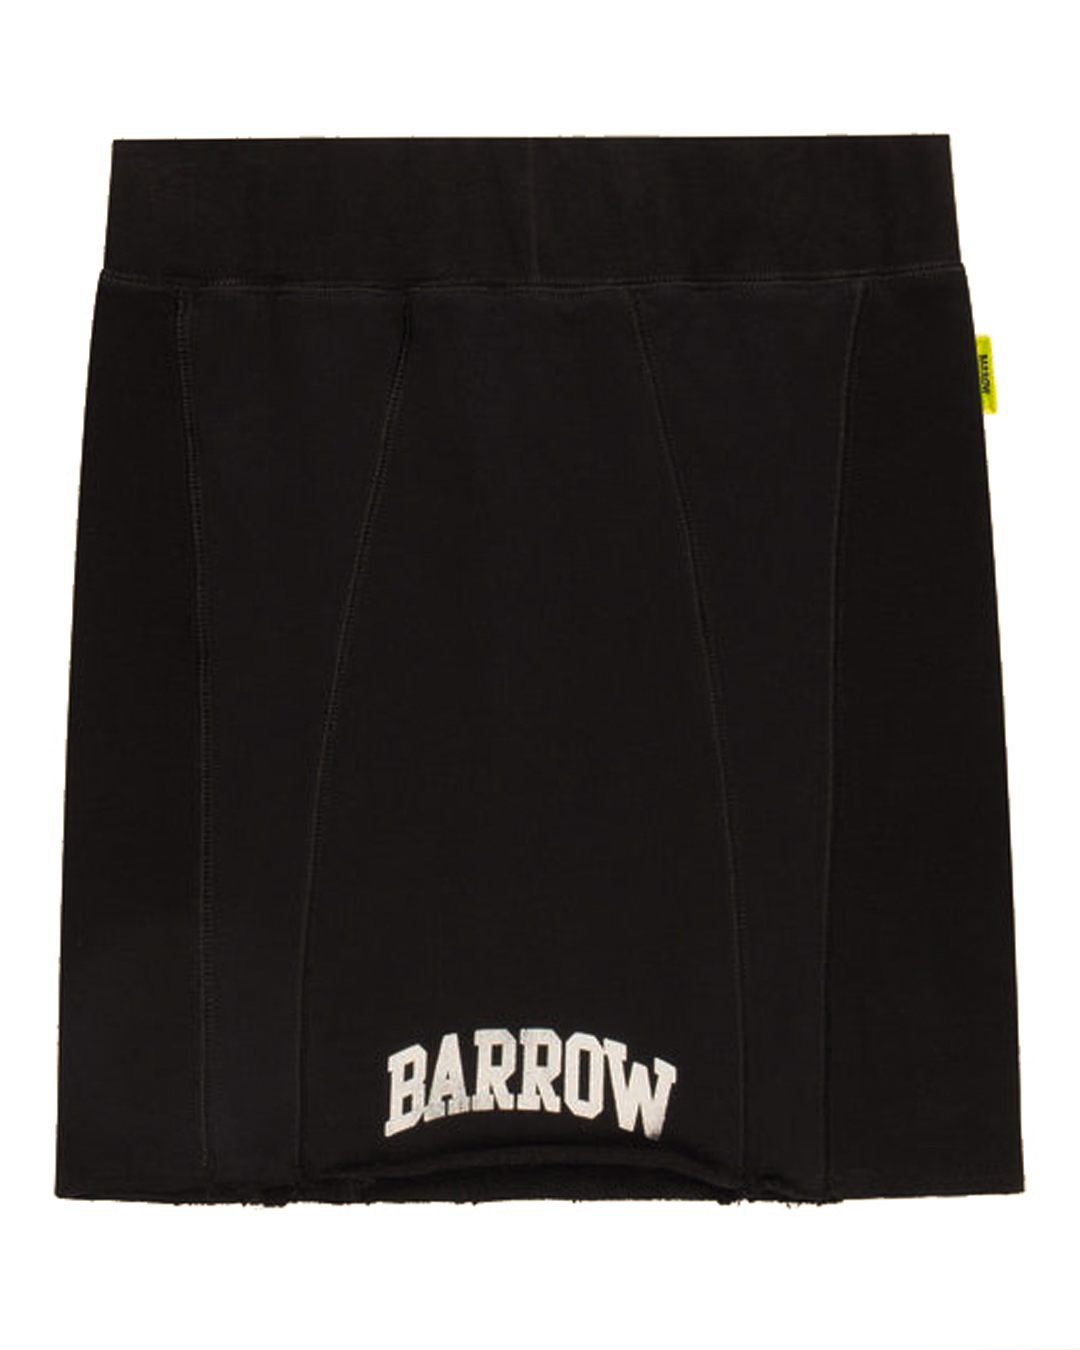 юбка BARROW S4BWWOSK118 черный l, размер l - фото 1